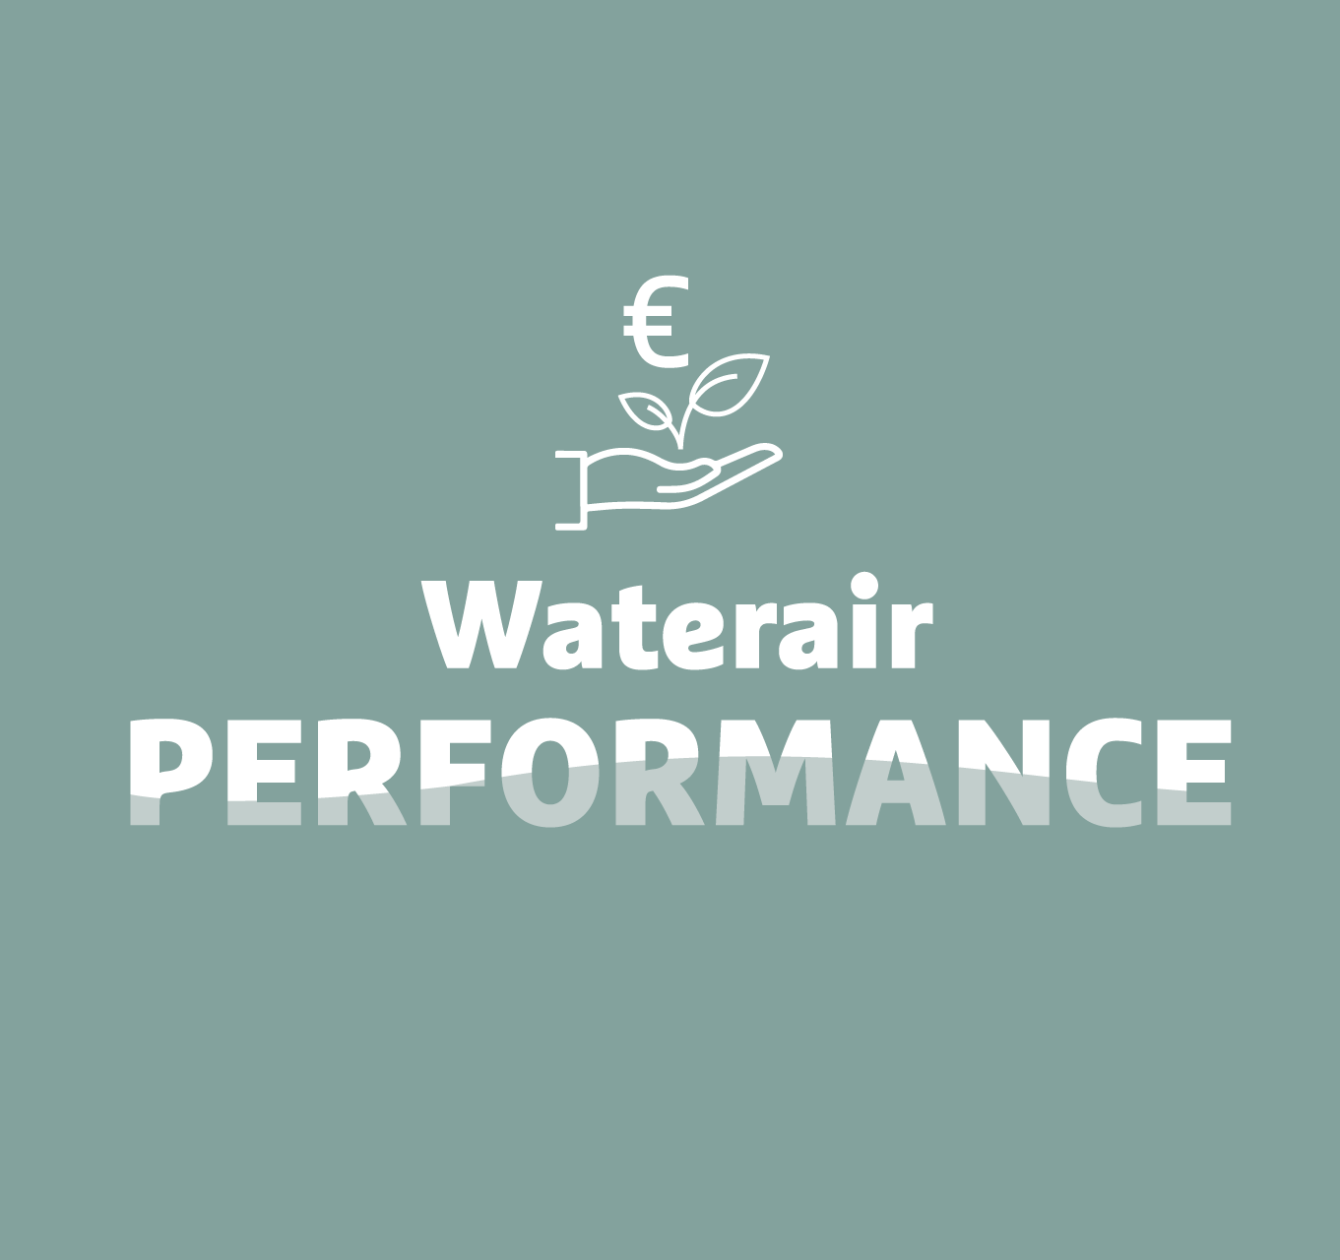 Waterair Performance: su piscina económica y eco-responsable